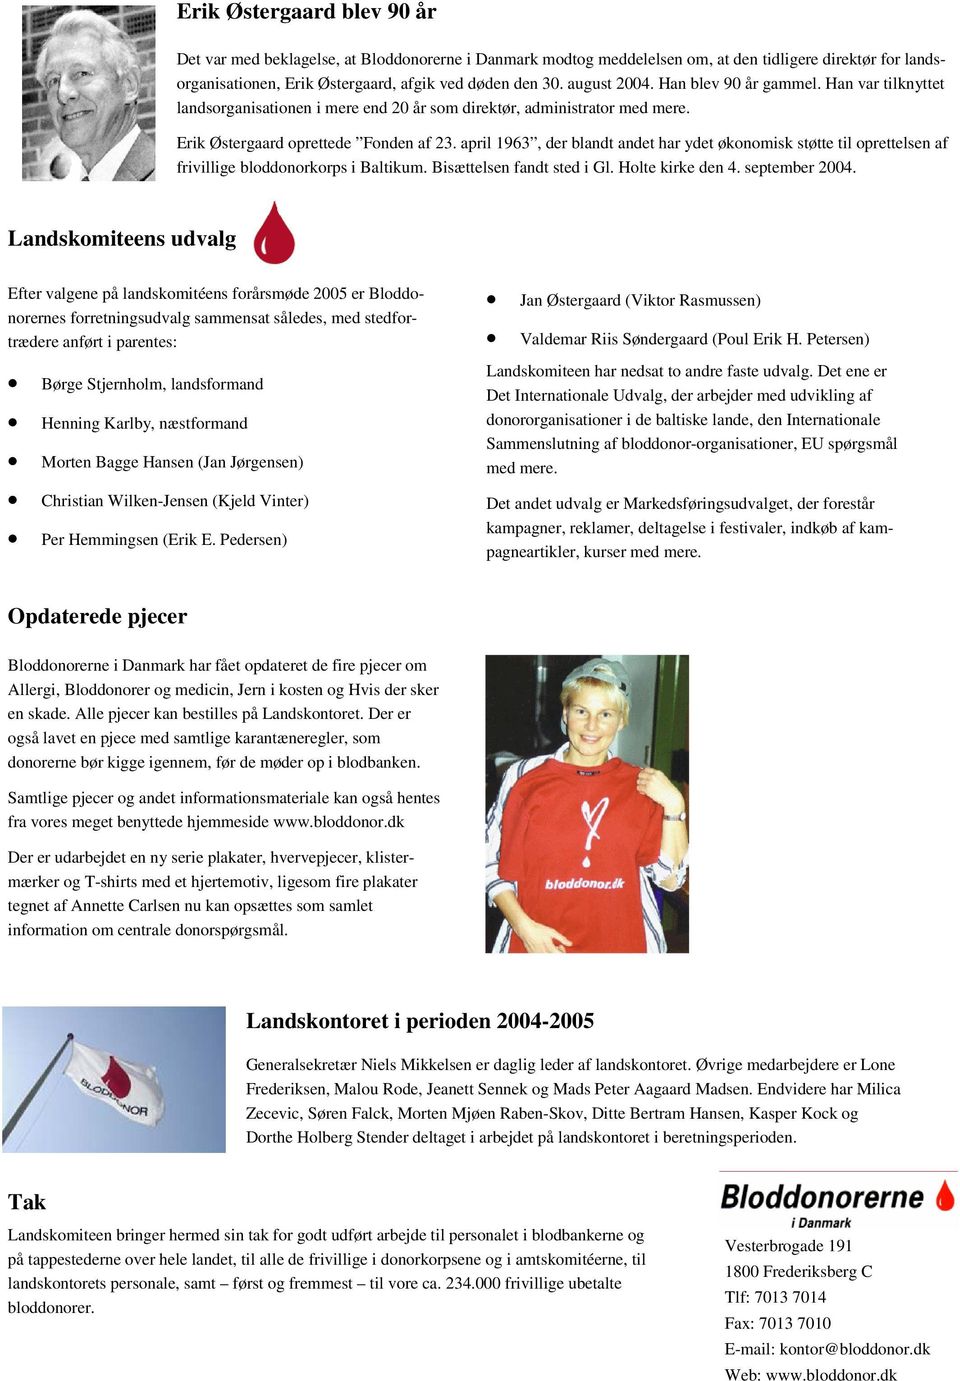 april 1963, der blandt andet har ydet økonomisk støtte til oprettelsen af frivillige bloddonorkorps i Baltikum. Bisættelsen fandt sted i Gl. Holte kirke den 4. september 2004.